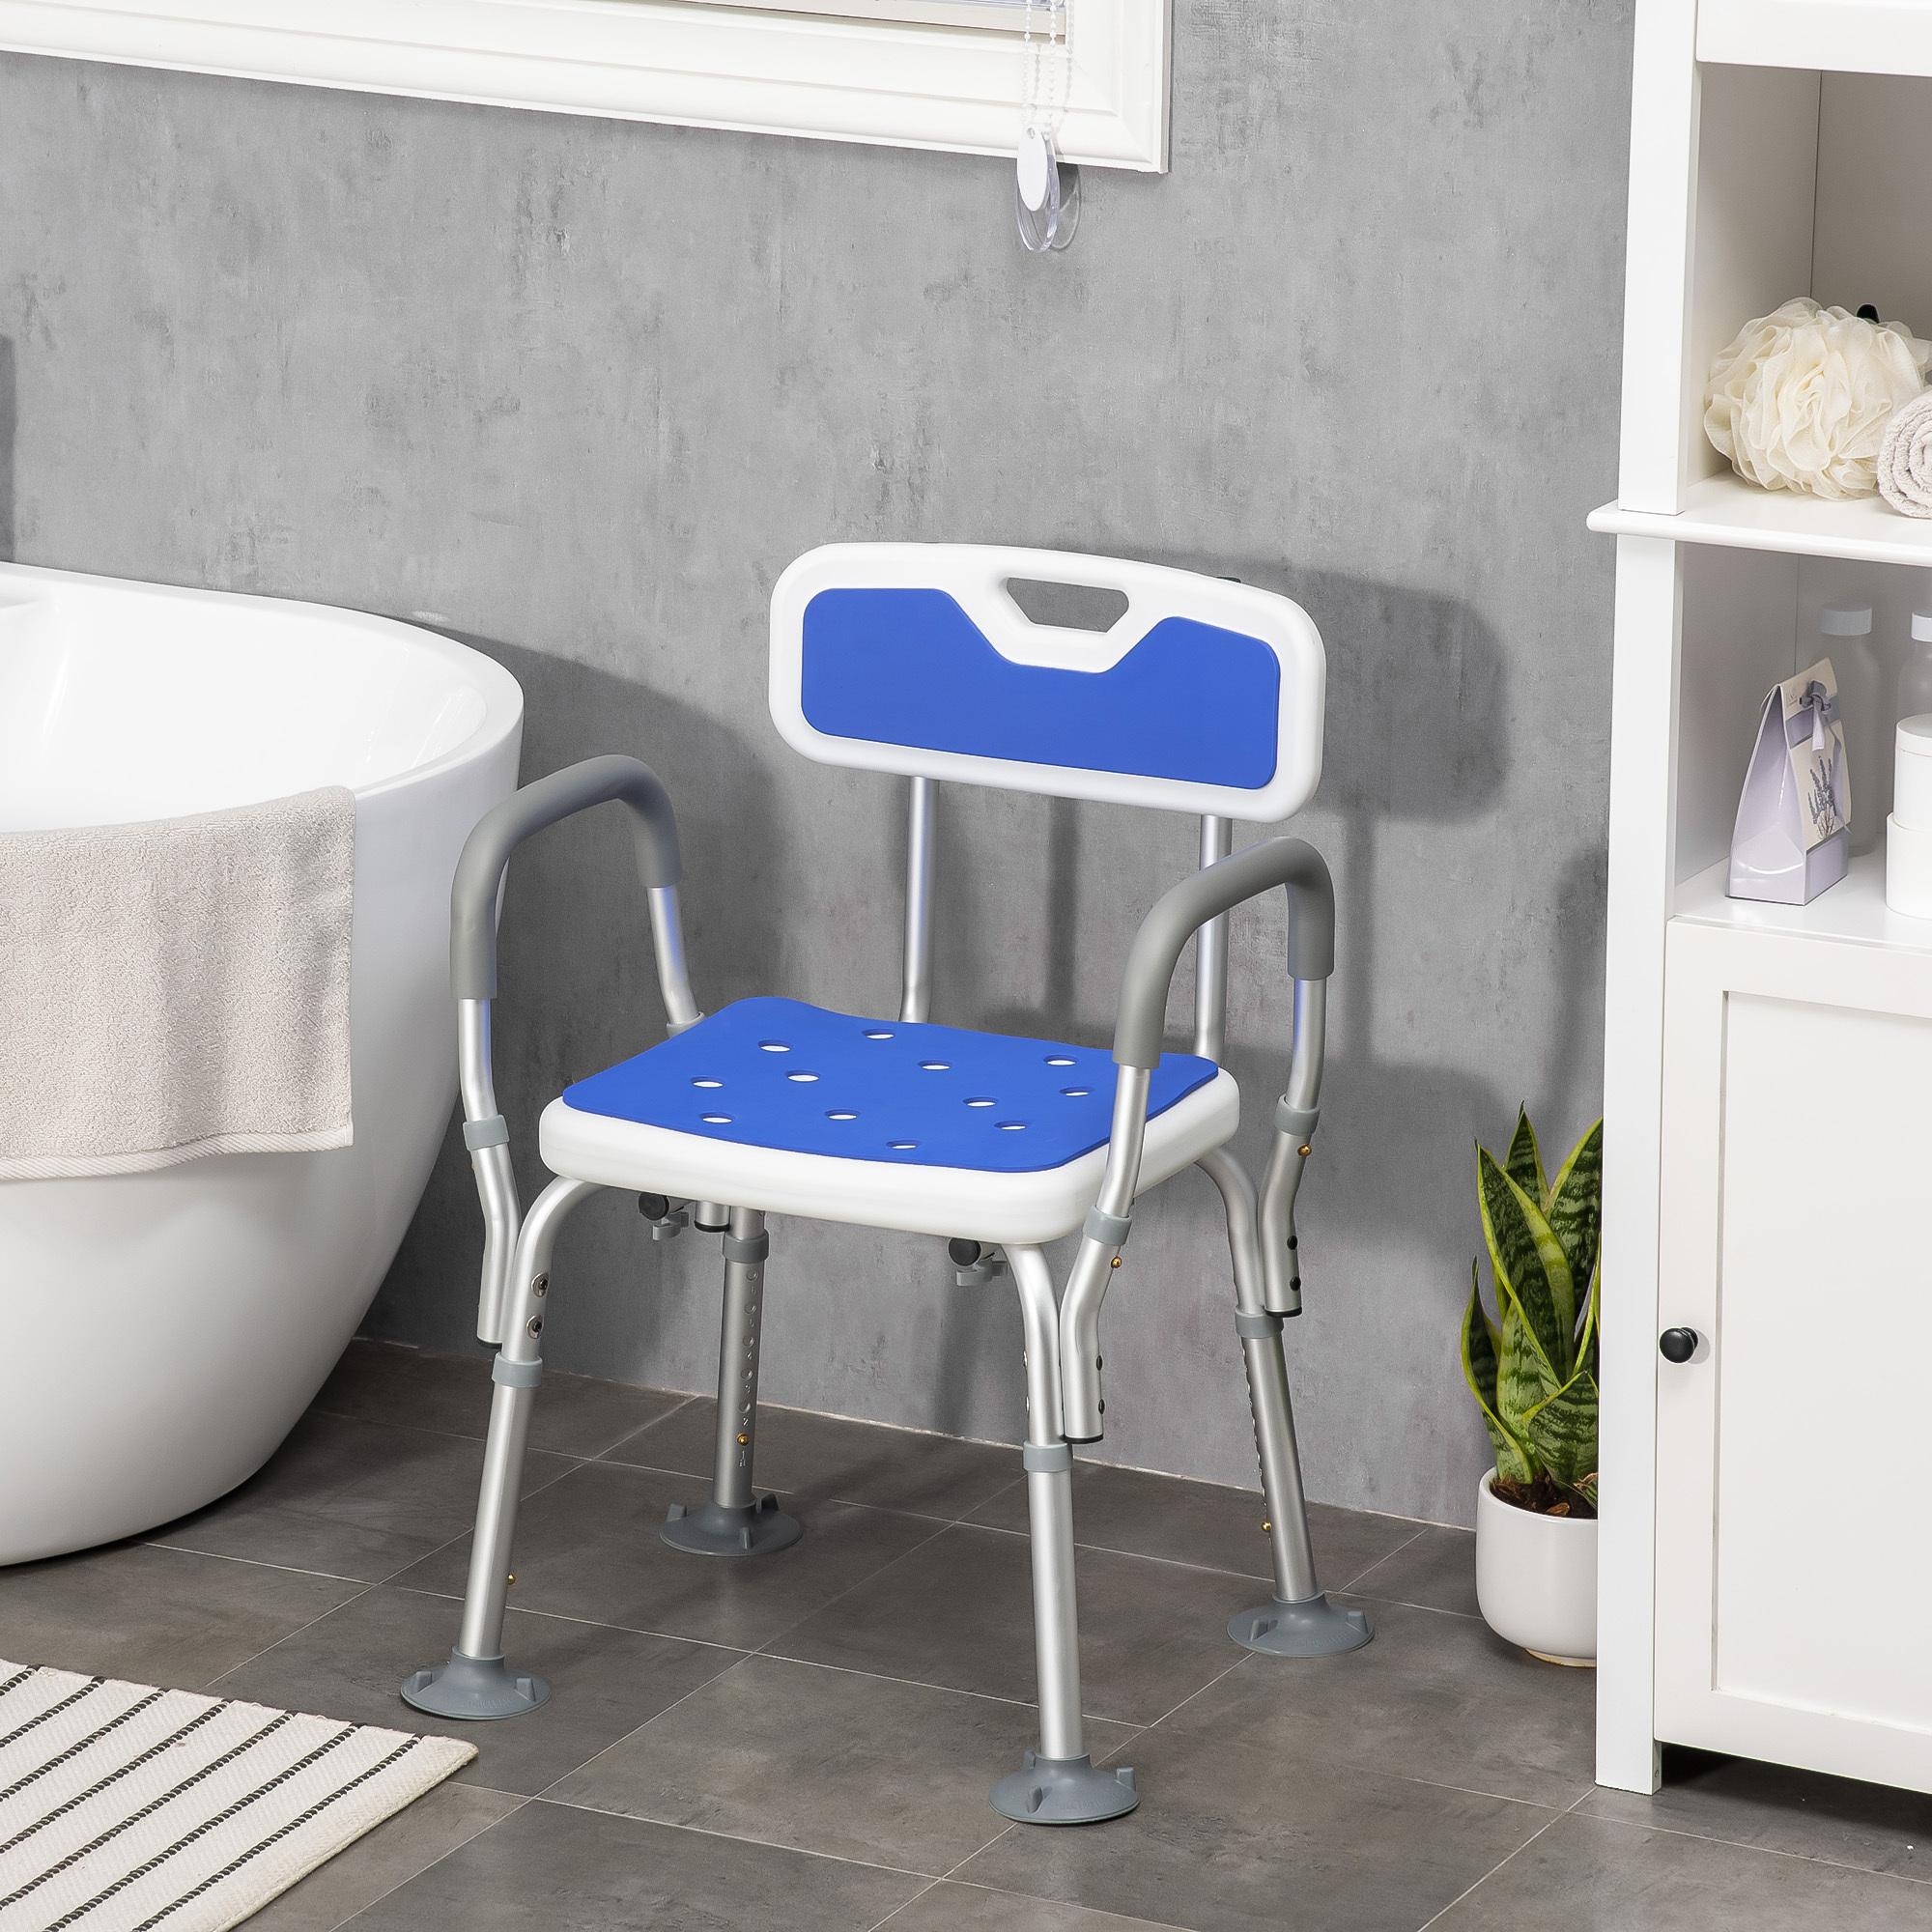 Chaise de douche siège de douche ergonomique hauteur réglable pieds antidérapants charge max. 136 Kg alu HDPE blanc bleu